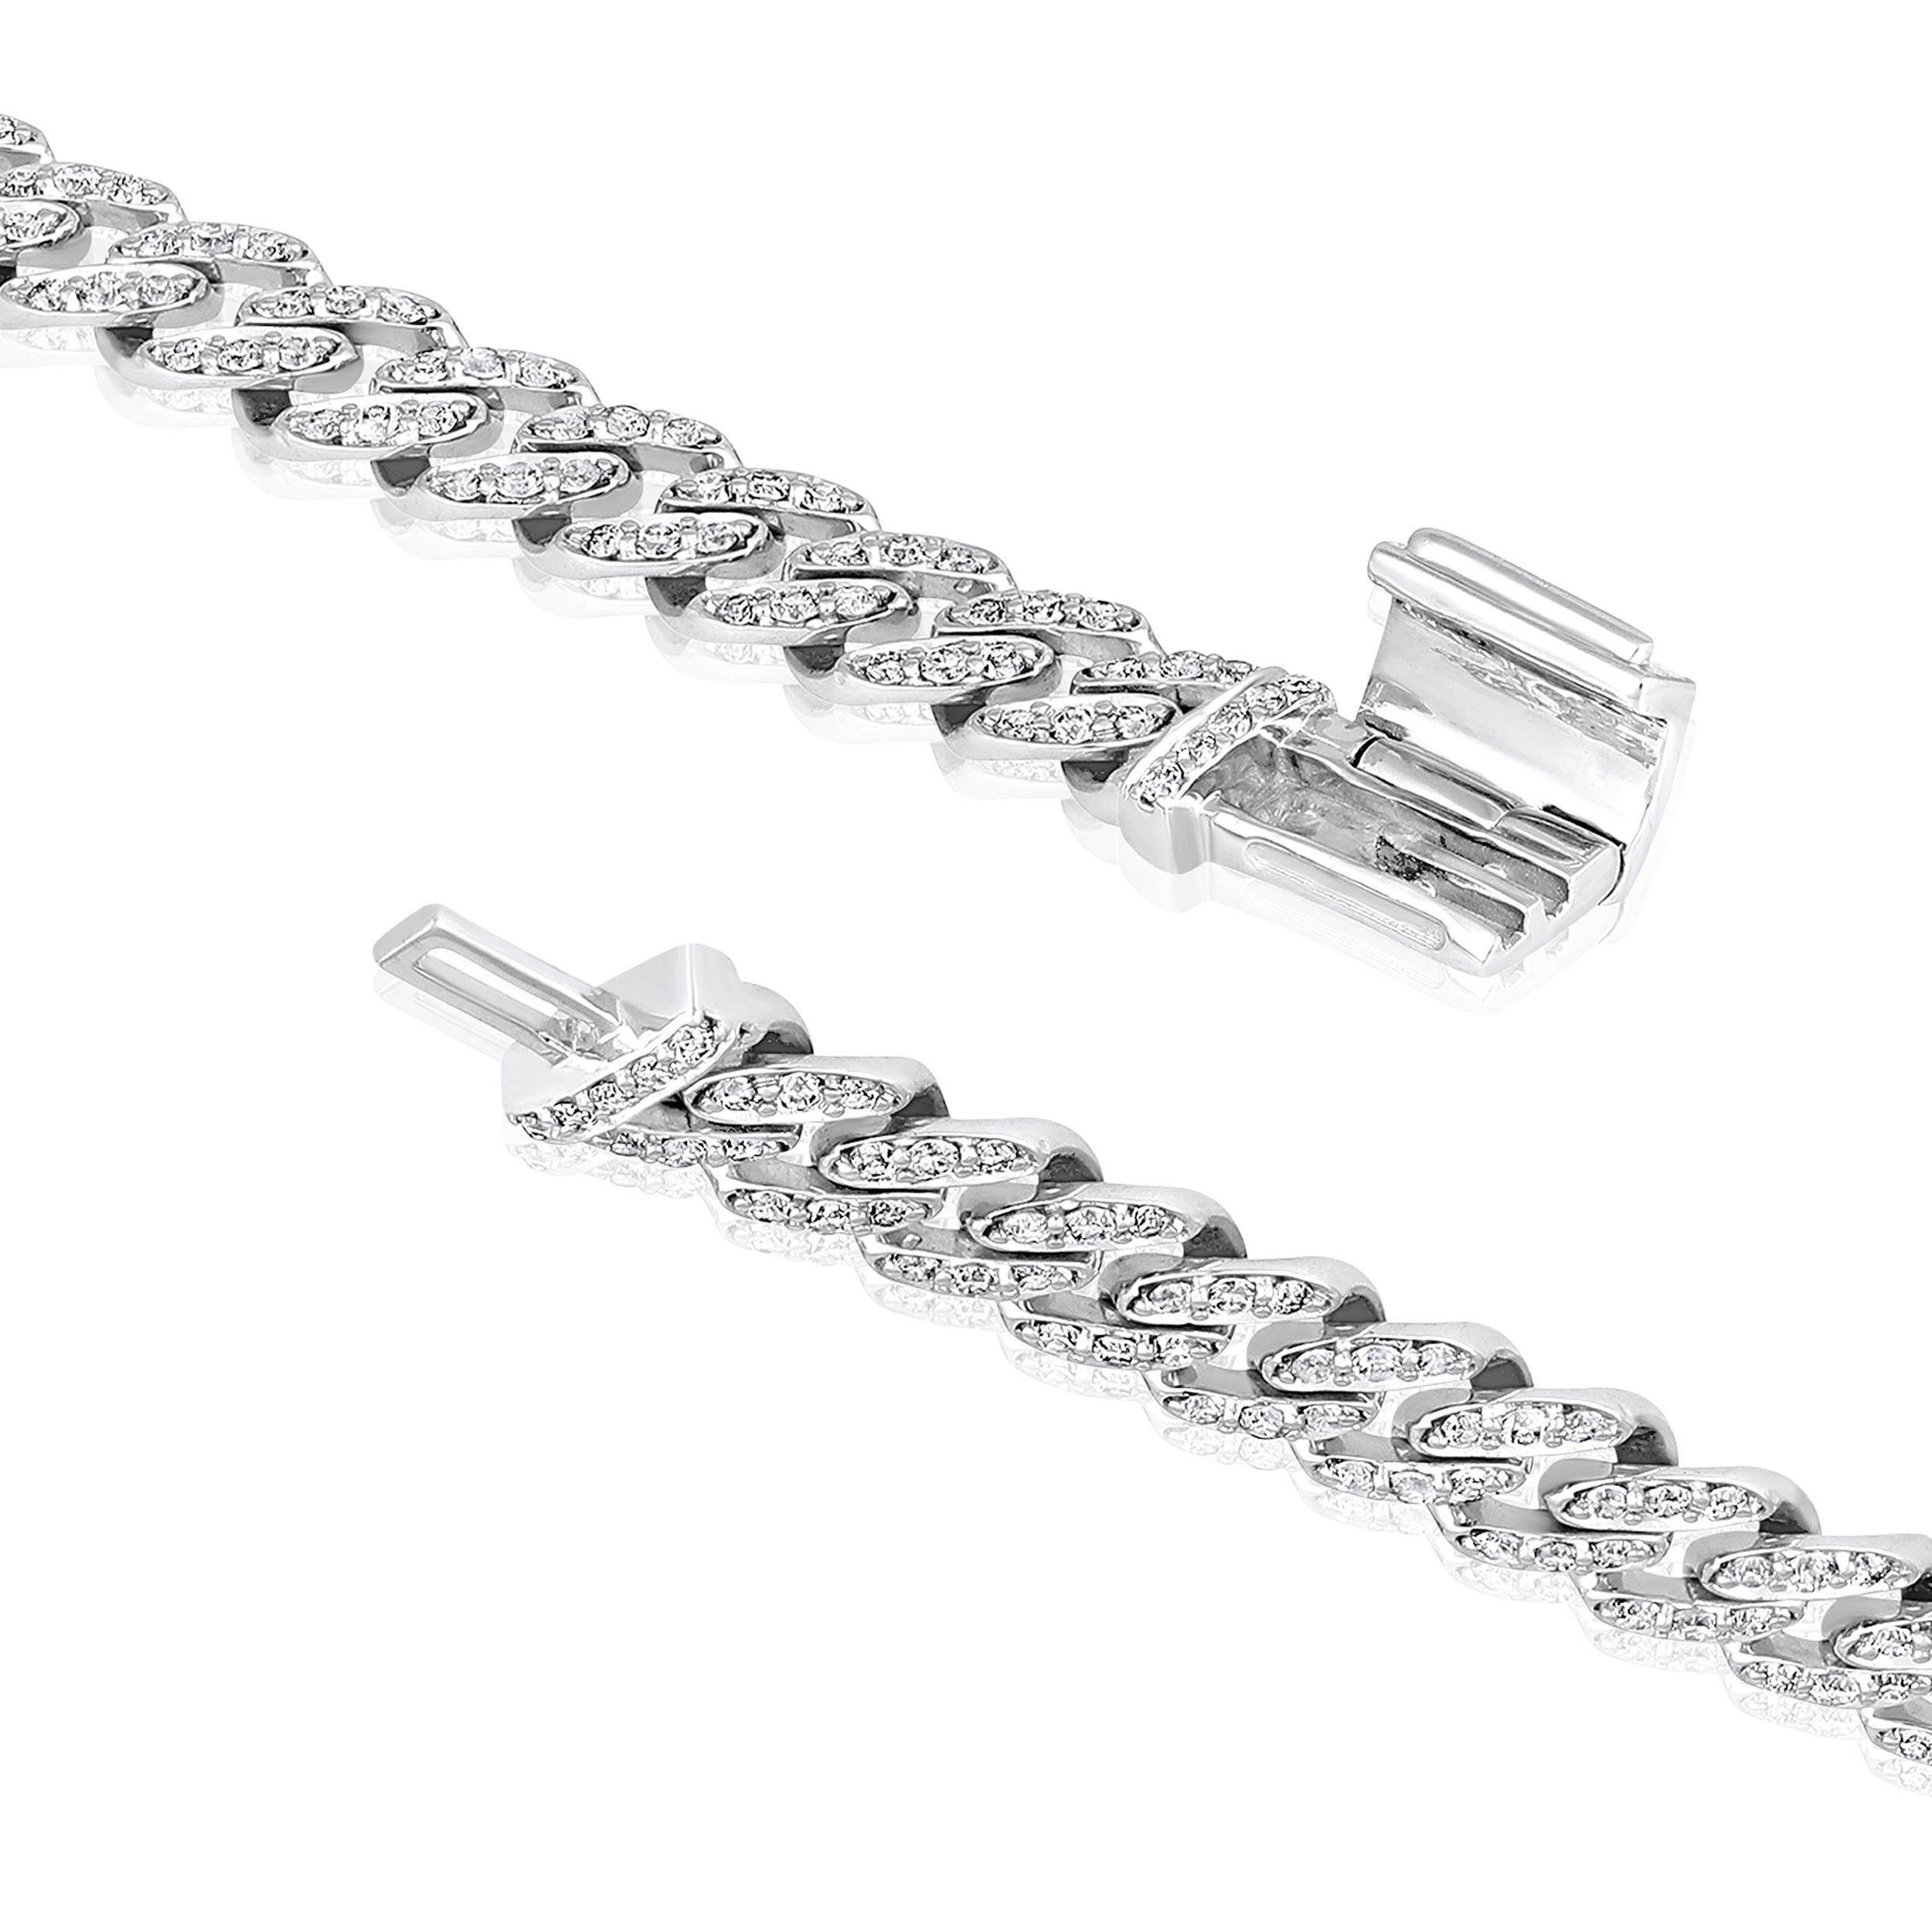 Fabriqué en or blanc 10K de 6,95 grammes, le bracelet contient 321 pierres de diamants ronds d'un total de 1,31 carat de couleur F-G et de carat I1-I2. La longueur du bracelet est de 7 pouces.

UNE ESSENCE CONTEMPORAINE ET INTEMPORELLE : Fabriqué en